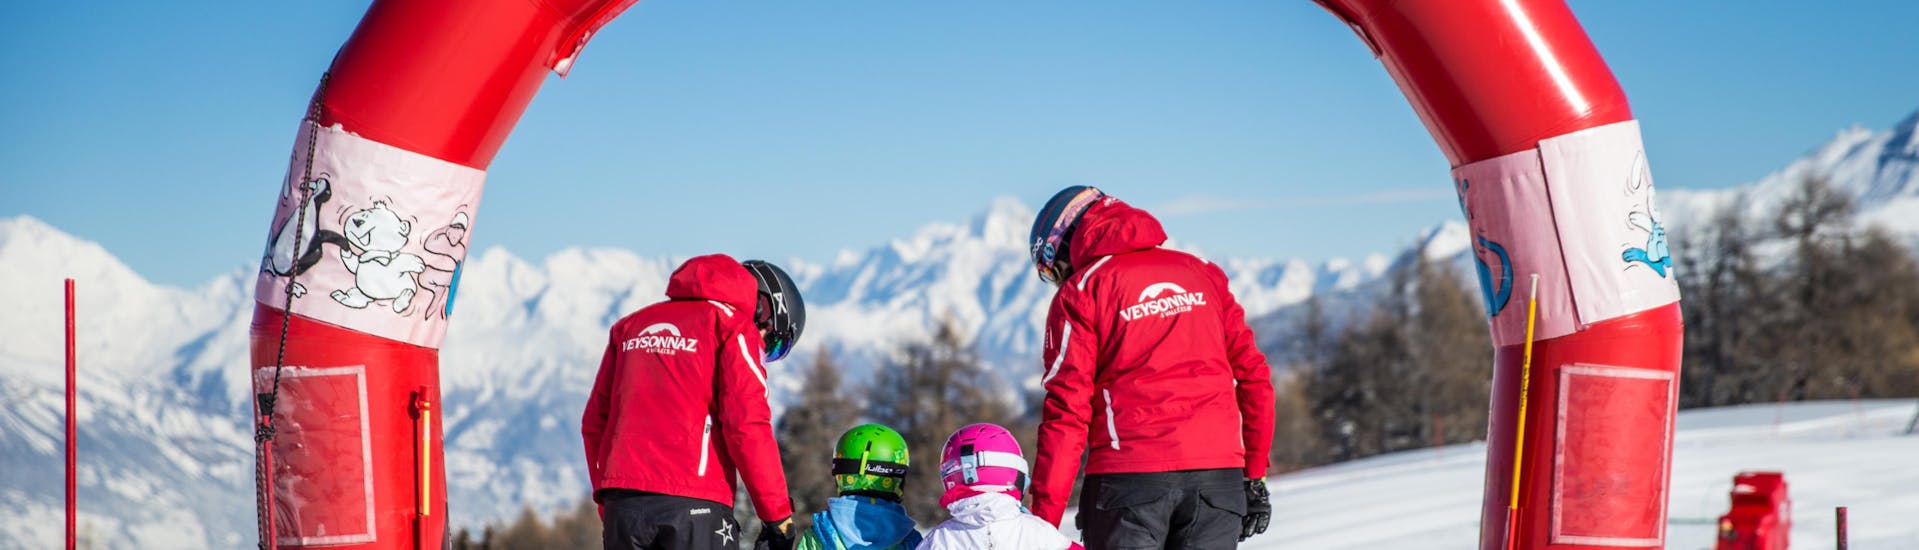 Due maestri della Scuola svizzera di sci Veyzonnaz aiutano i bambini a muovere i primi passi sugli sci durante una lezione privata di sci per bambini dai 2 anni e mezzo ai 5 anni.